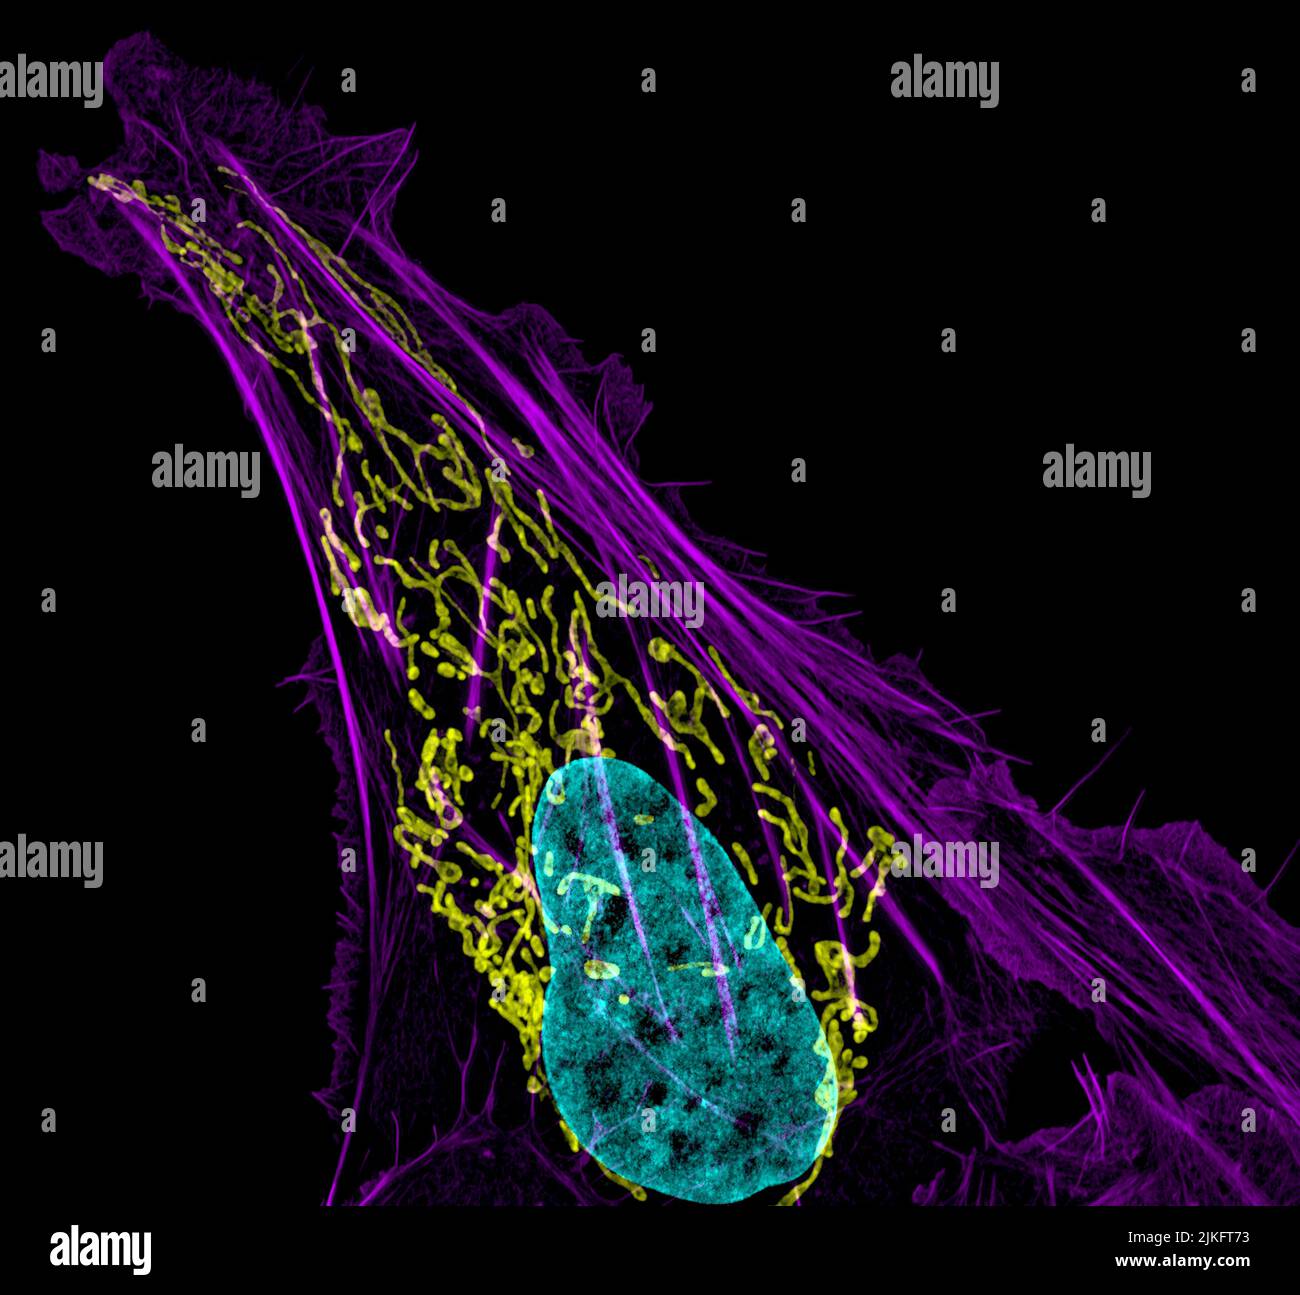 Questa immagine mostra una cellula di osteosarcoma con DNA in blu, fabbriche di energia (mitocondri) in giallo, e filamenti di actina, parte dello scheletro cellulare, in viola. L'osteosarcoma, uno dei rari tumori che si originano nelle ossa, è estremamente raro, con meno di mille nuovi casi scatenati ogni anno negli Stati Uniti. Foto Stock